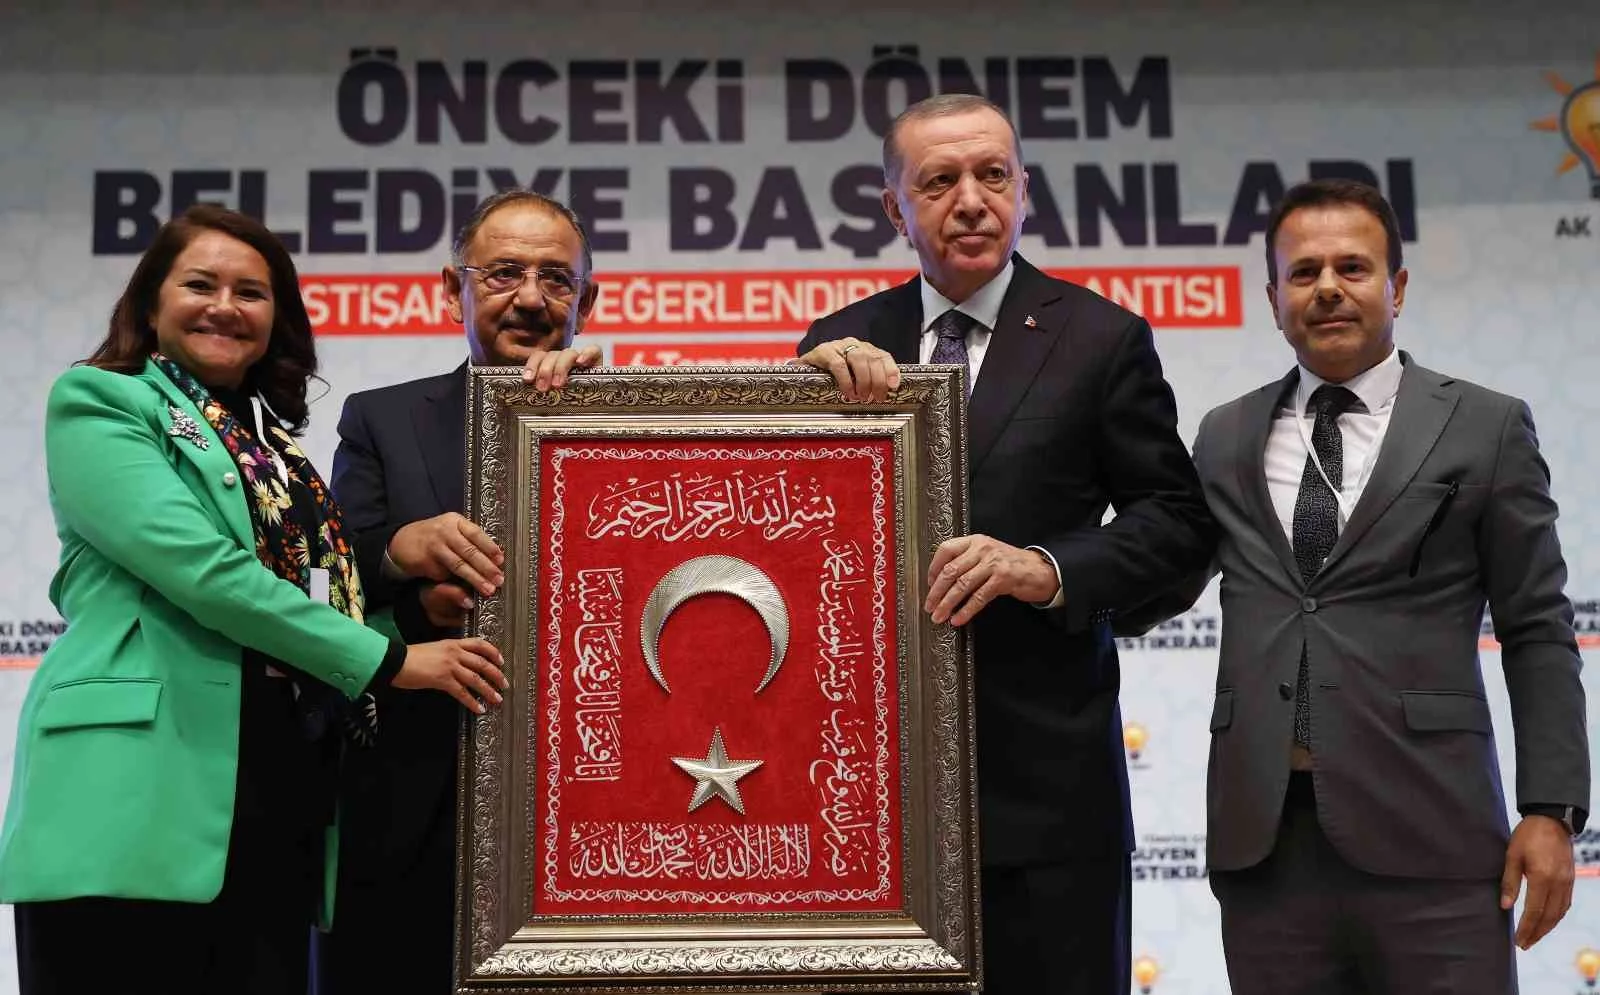 Cumhurbaşkanı Erdoğan:  “Bu seçim kırgınlıkla, nefsaniyetle hareket edilecek bir seçim değildir